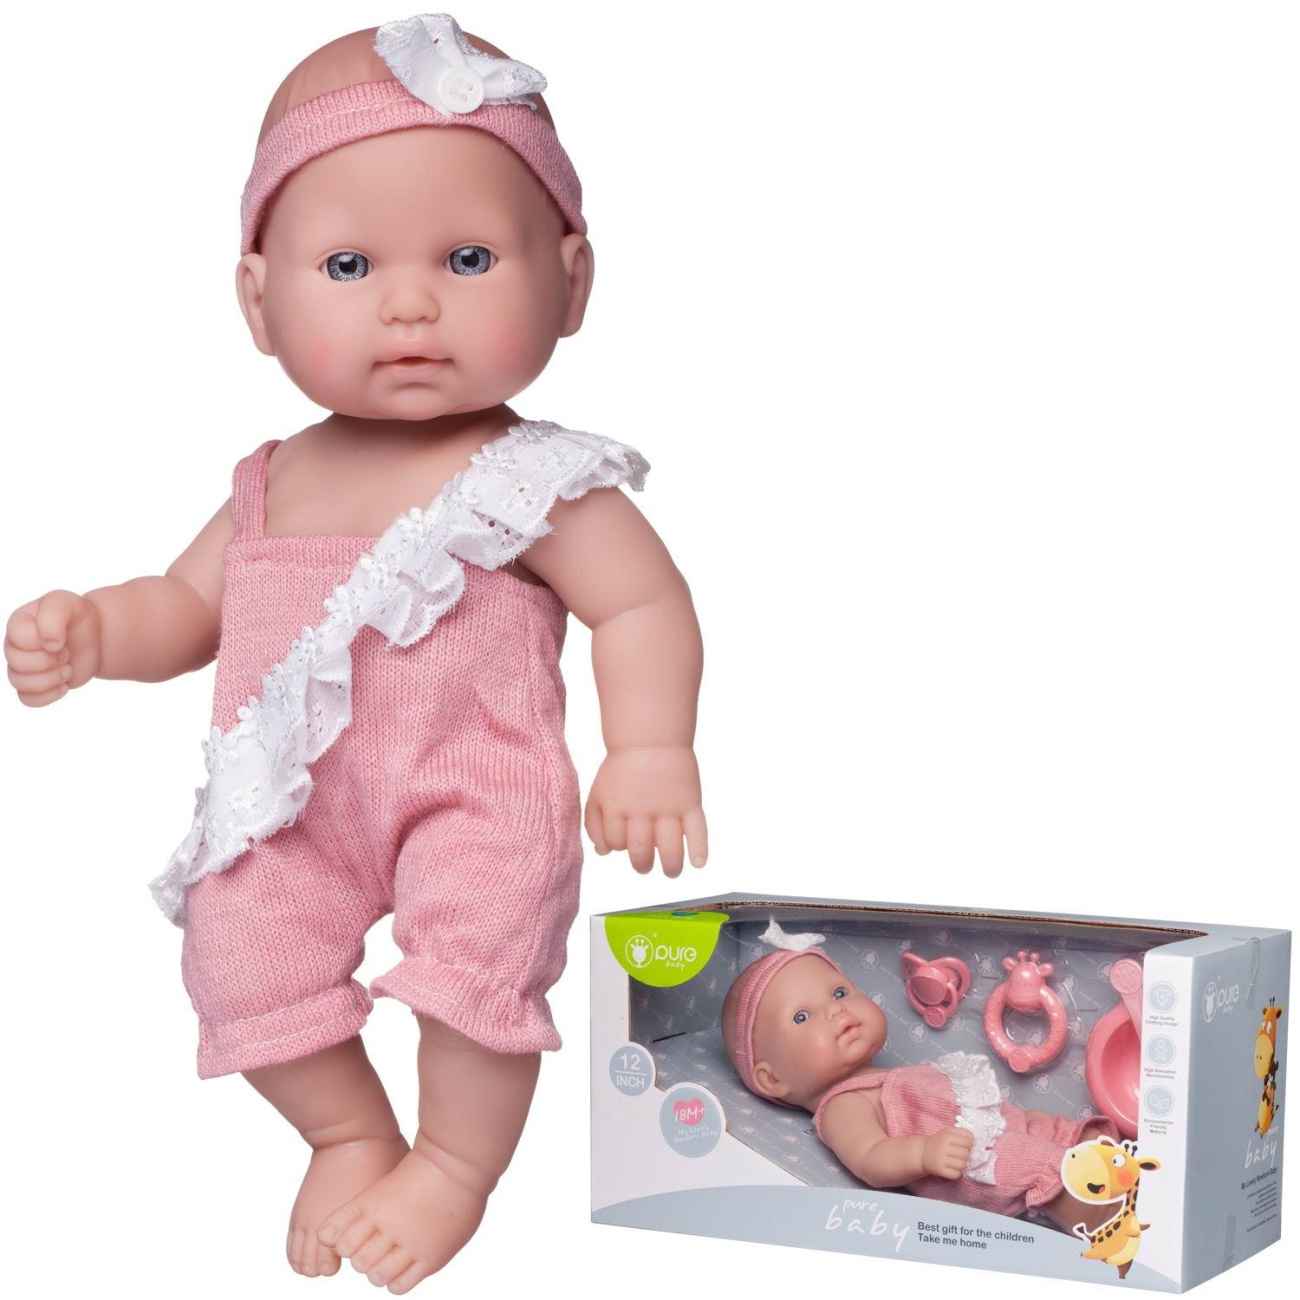 Пупс Junfa Pure Baby в розовом песочнике с белой рюшкой и повязке на голове, 30 см WJ-22512